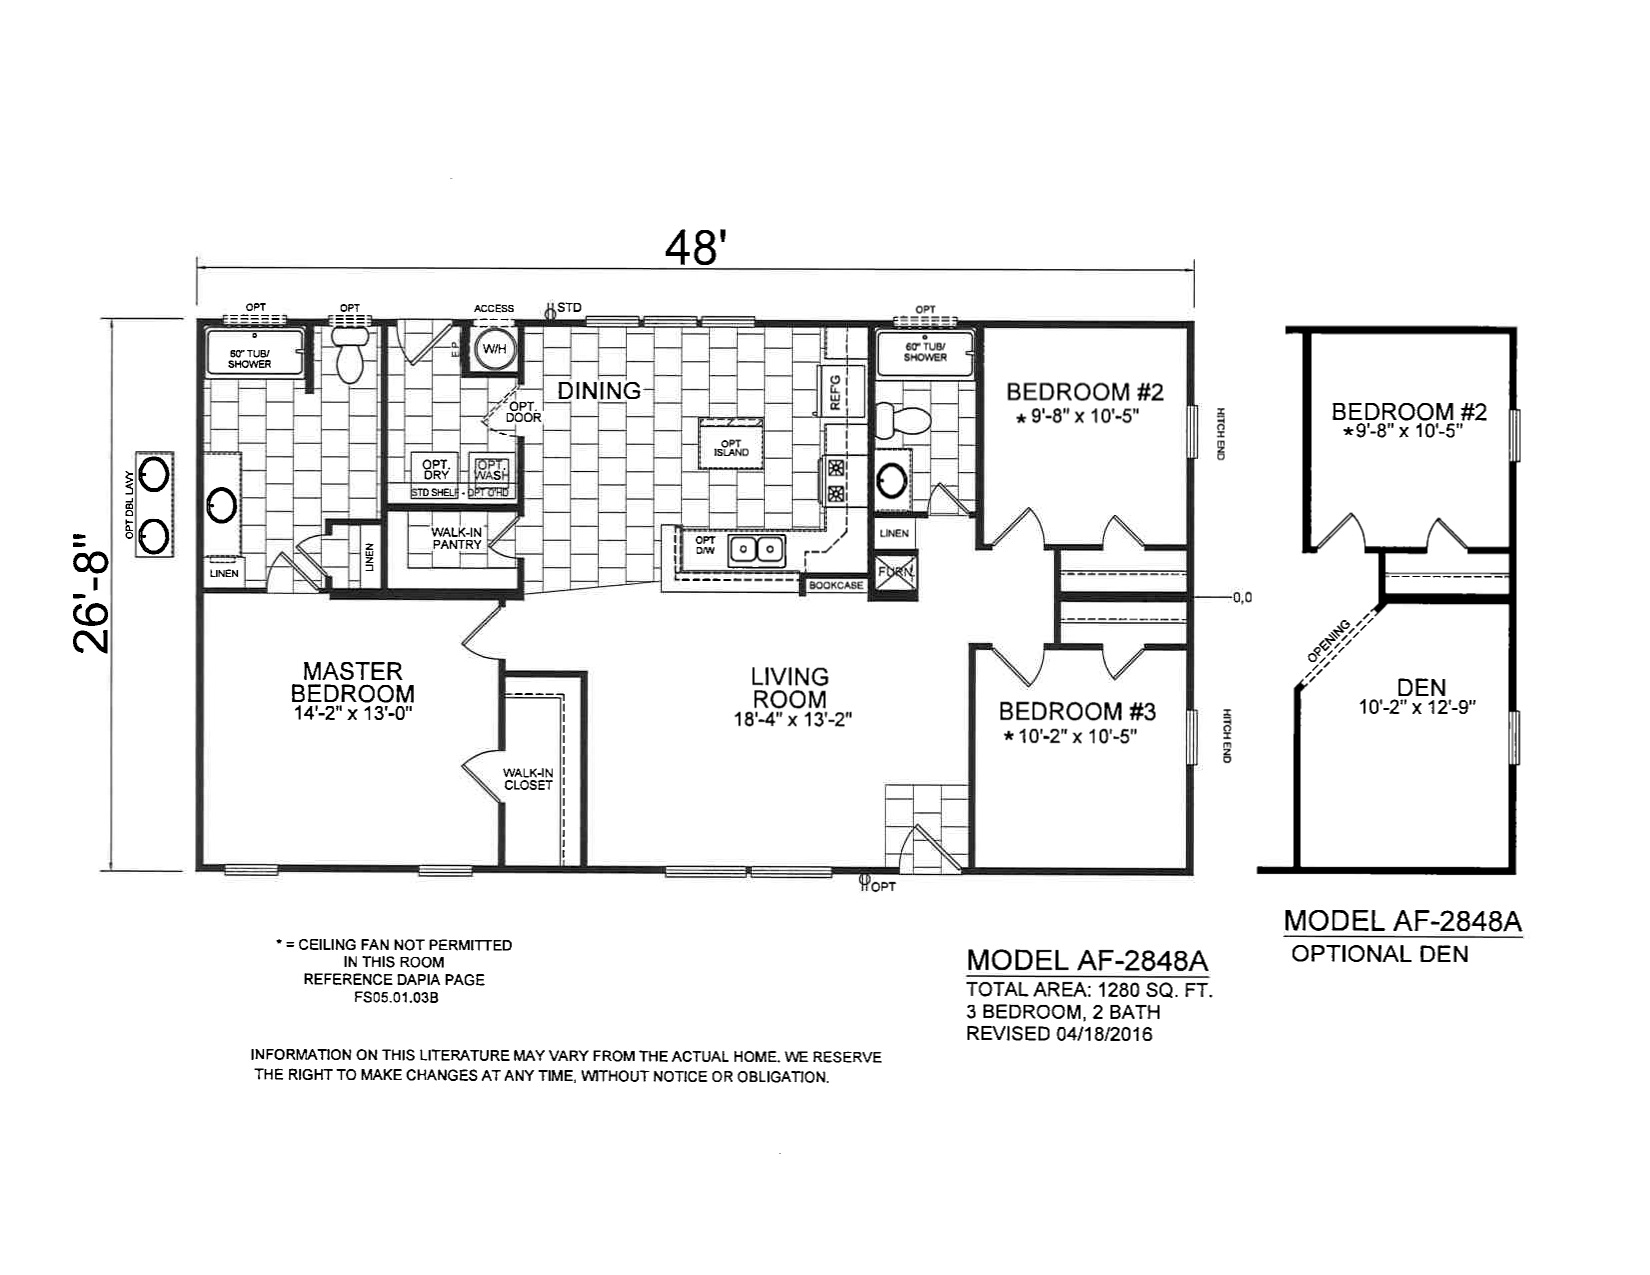 Homes Direct Modular Homes - Model AF2848A - Floorplan